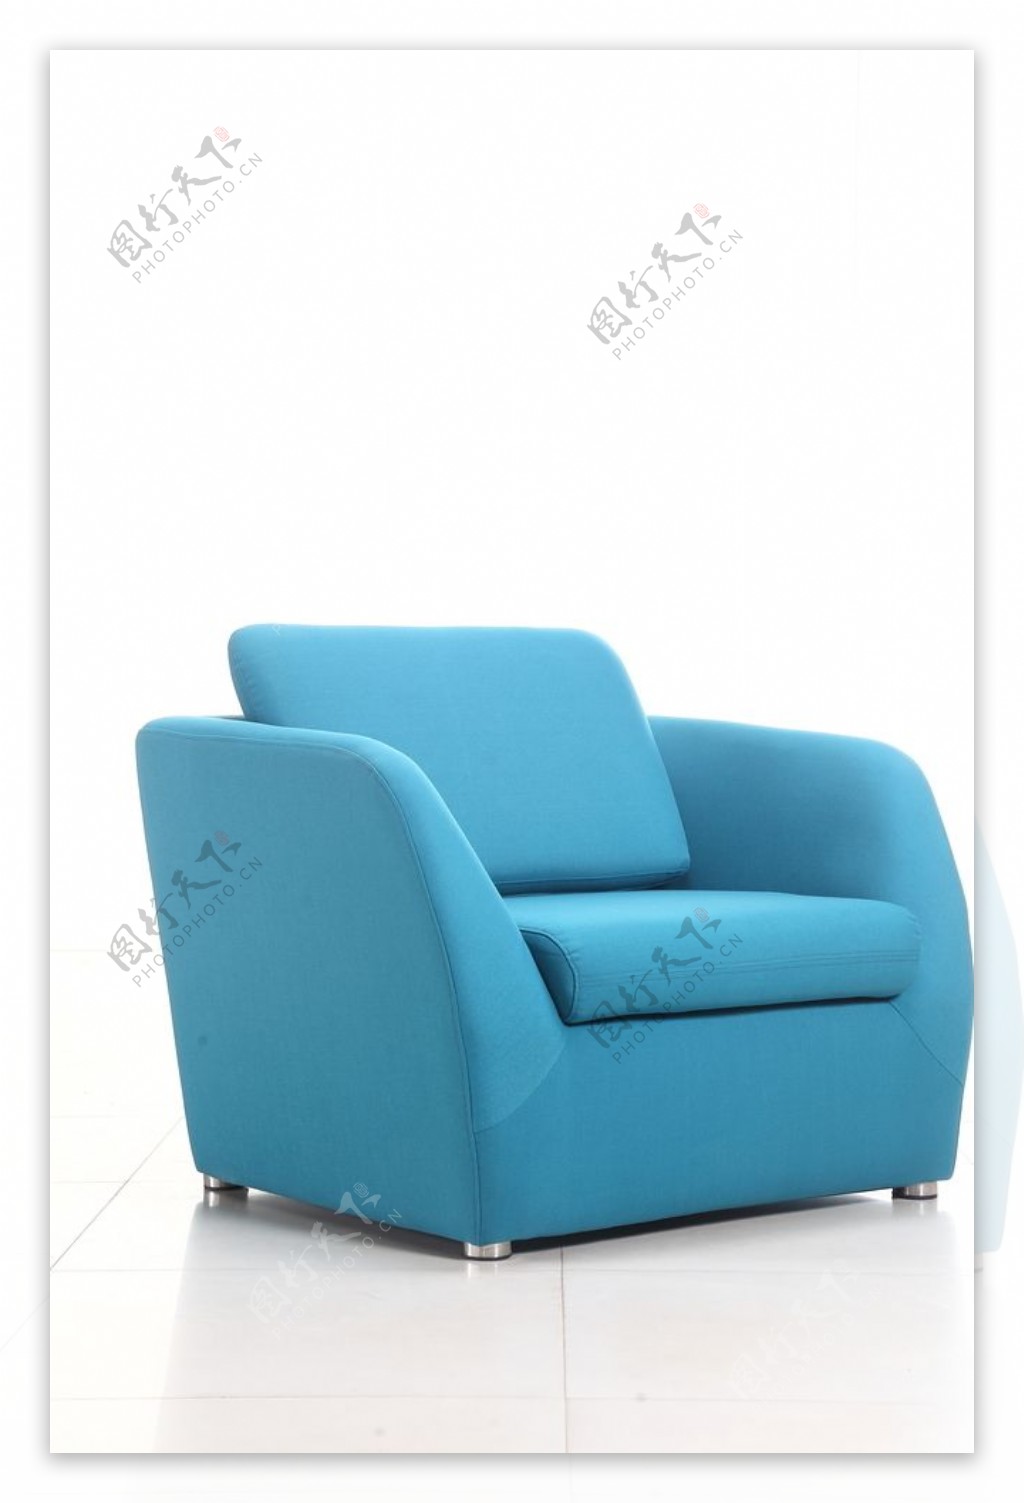 蓝色单人沙发